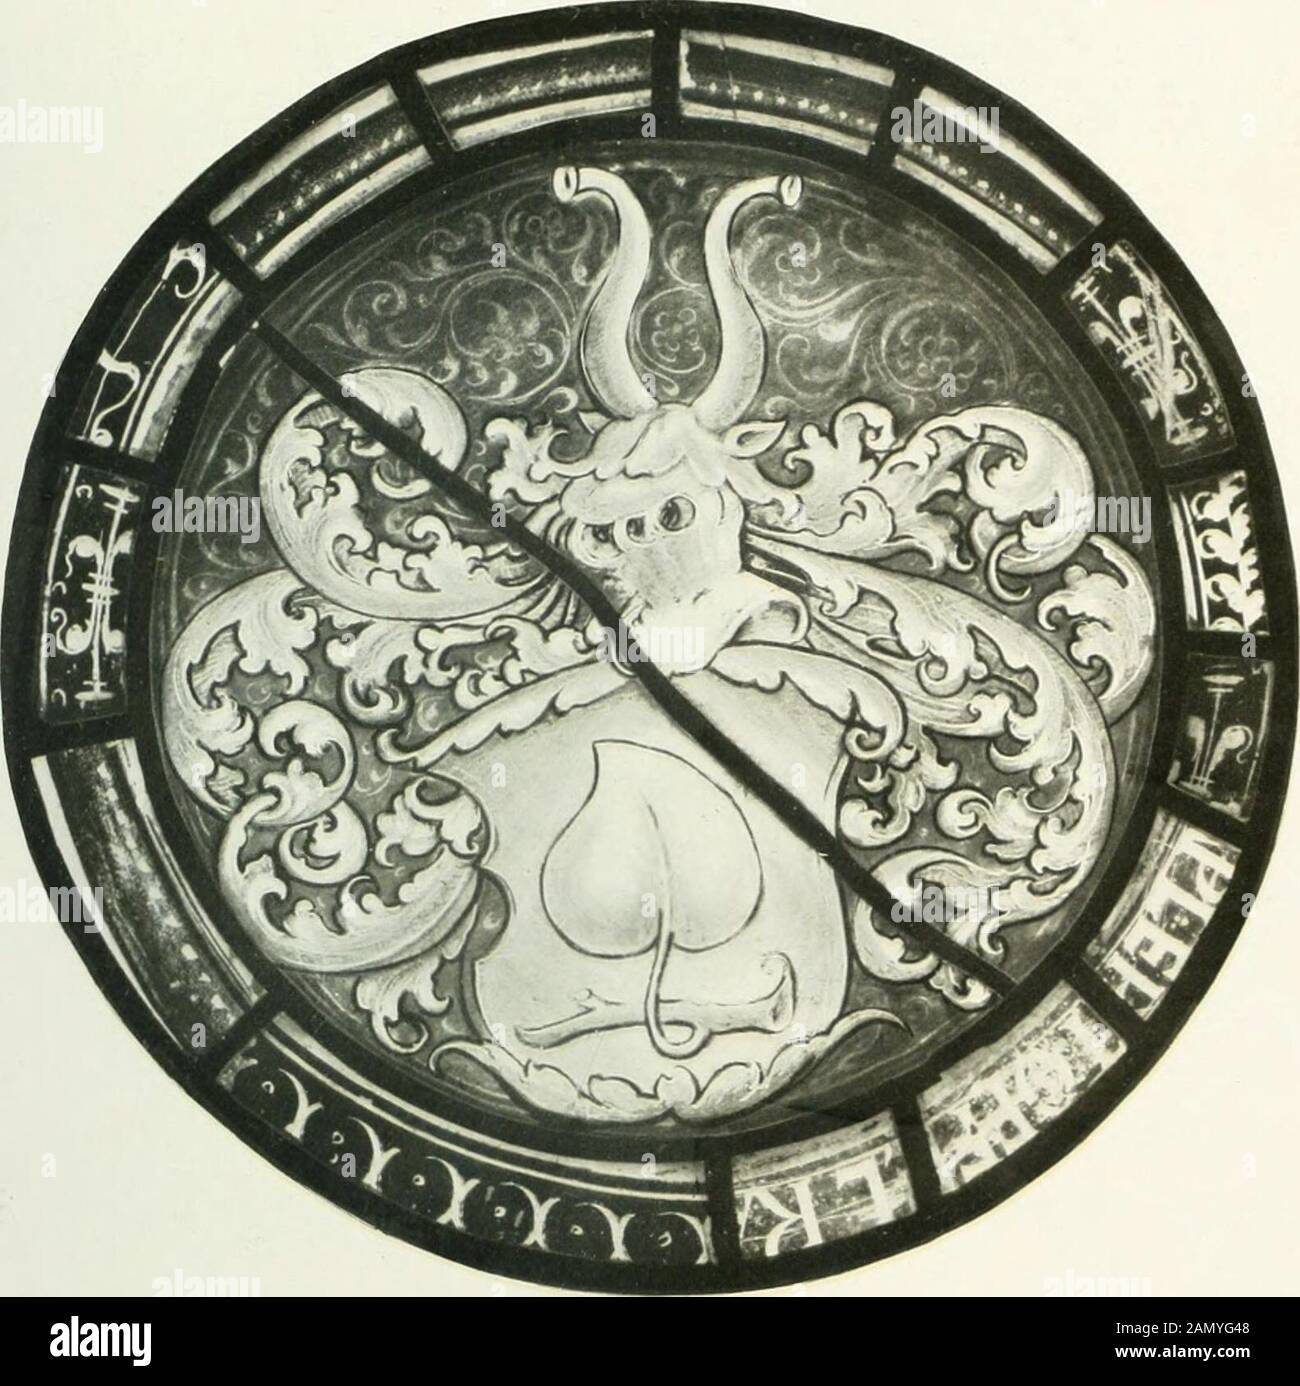 Schwäbische Glasmalerei . Nach Hans Leu (?), Zürich, um 1520 — Schwäbiscli, um 1525 91 Maß: 14,5 cm Durchmesser. Technik: Grau in grau K*-ma]t. Silherircib. Hier und da neu übergangen.Erhaltung: Gut. Erwerbung: Im Juli 1!)07 von Fritz Emmerling in Rottweil erworben (Inventar III,Nr. 12558 c).. Schwäbisch, um 1523. 46. Rundes Wappenscheibchen von Hornstein. Das Wappen führt eine weiße, über einem gelben Dreiberg gebogene Hirschstange in Blau. Helmzier fehlt. (Es stimmtmit dem des Wappenbuches von Abt Ulrich in St. Gallen, nicht mit Siebmachers Wappen-buch überein — Bd. I, S. 113 -- wo das Feld Stock Photo